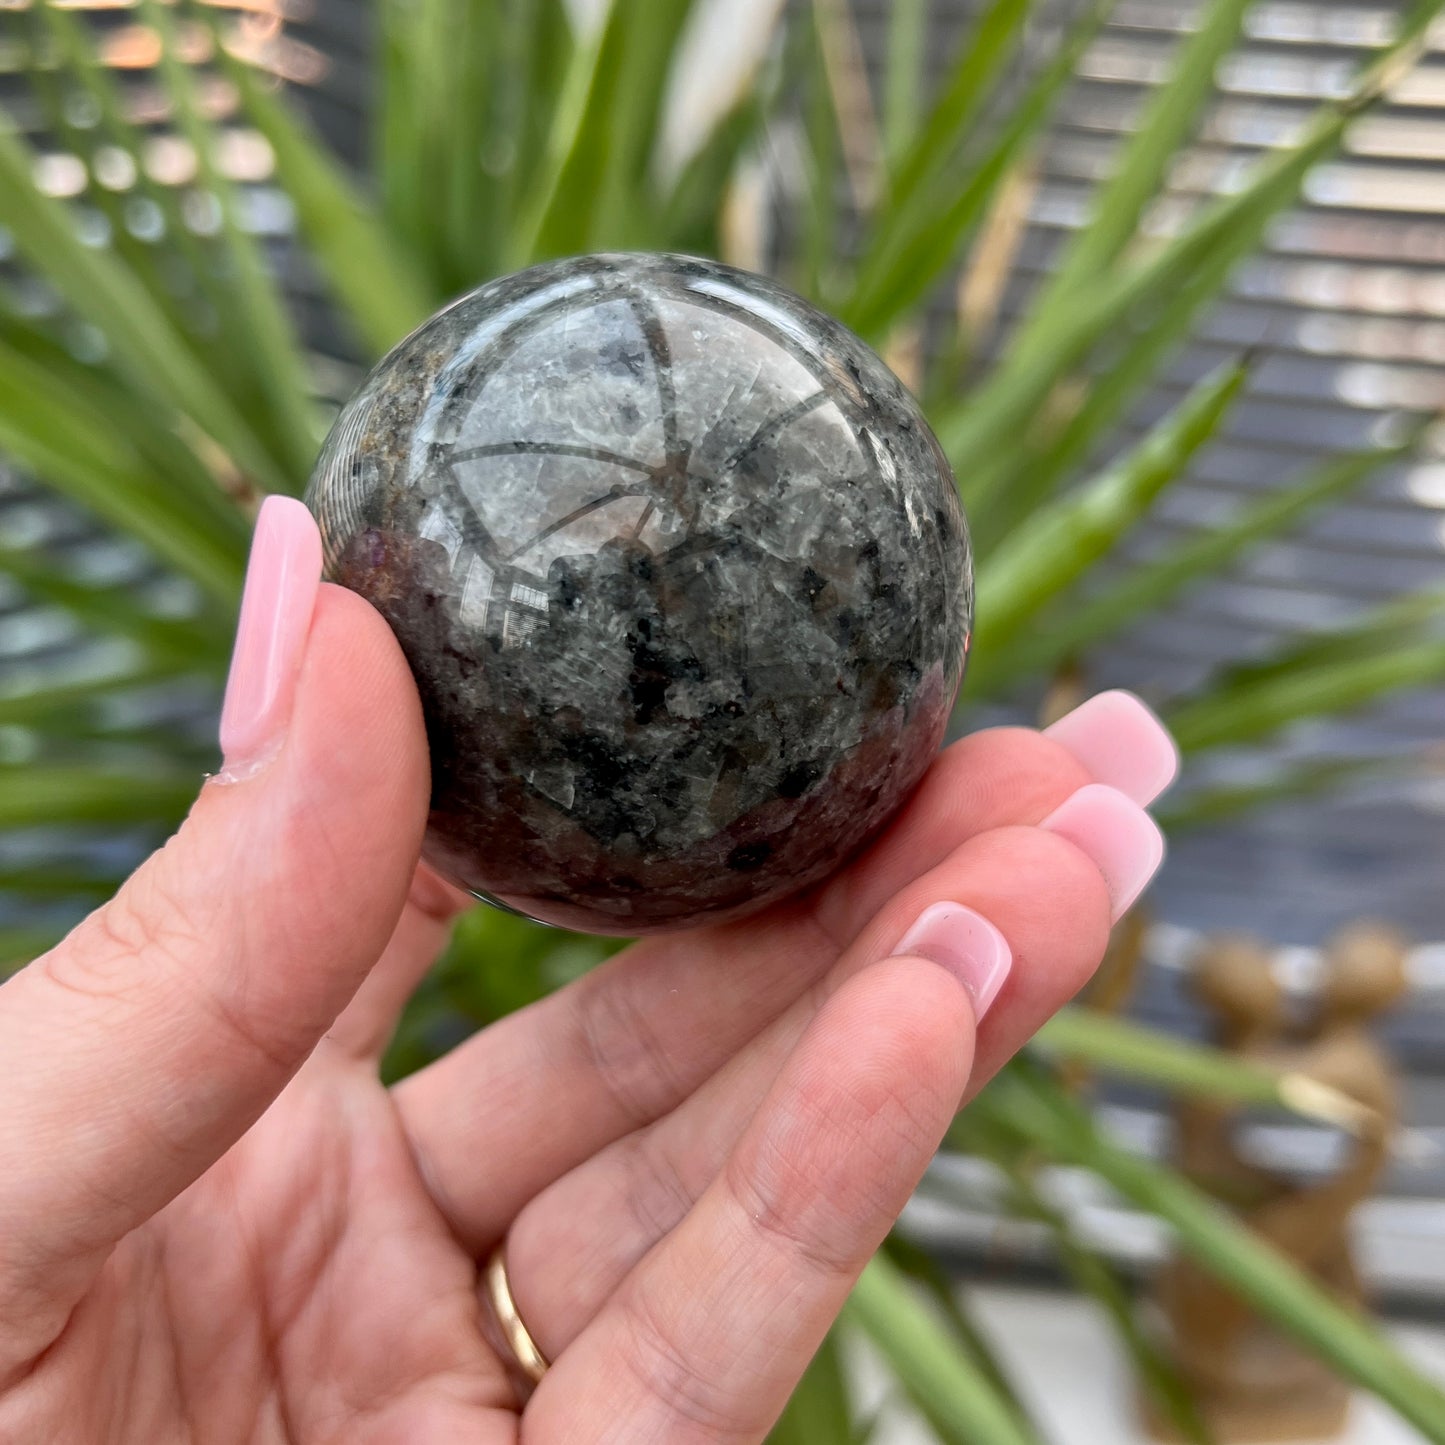 Larvikite Sphere